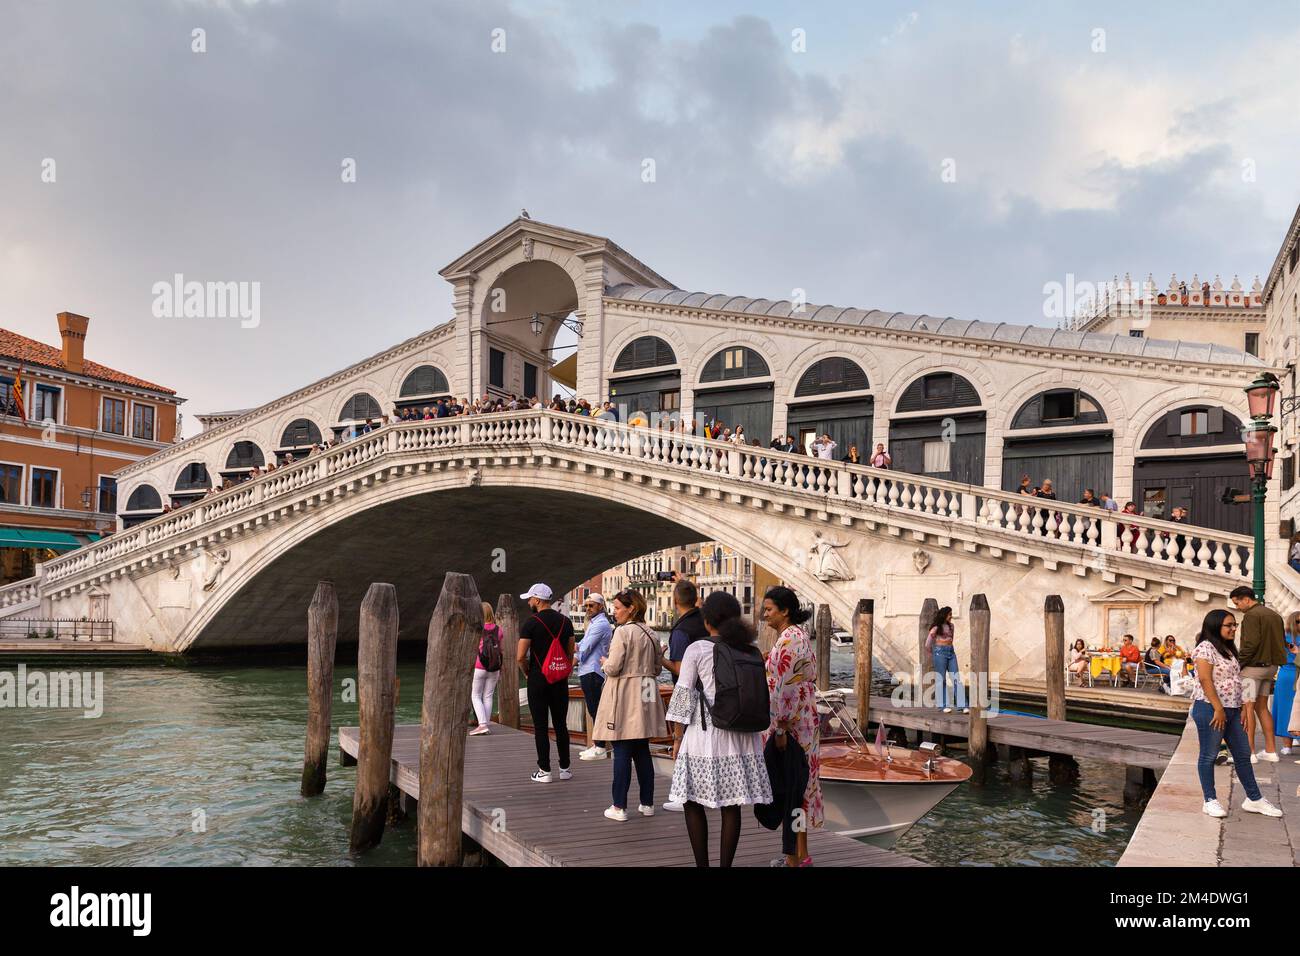 La vista sul Ponte di Rialto sul Canal Grande a Venezia. I turisti soggiornano sul Ponte di Rialto e guardano le gondole e le barche sul Canal Grande. Foto Stock